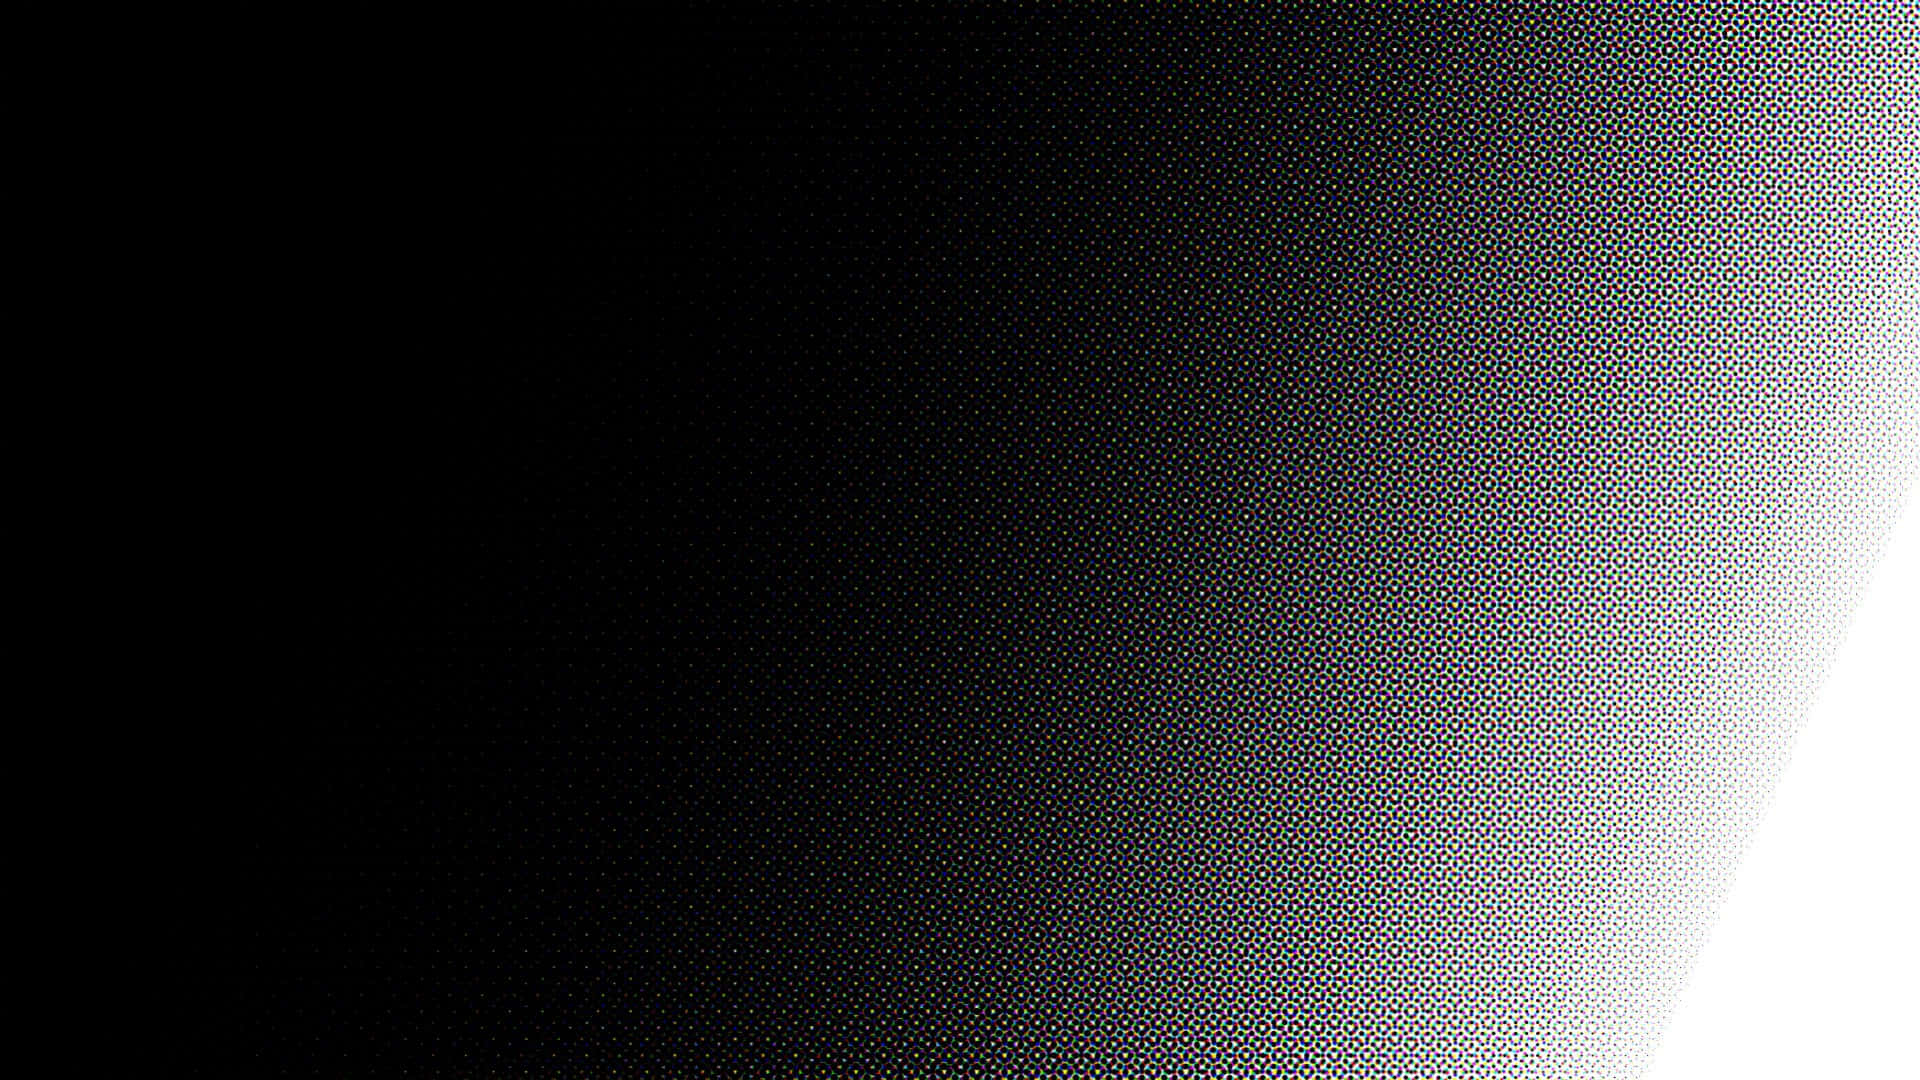 Unacombinación Sorprendentemente Simplista De Negro Y Blanco. Fondo de pantalla